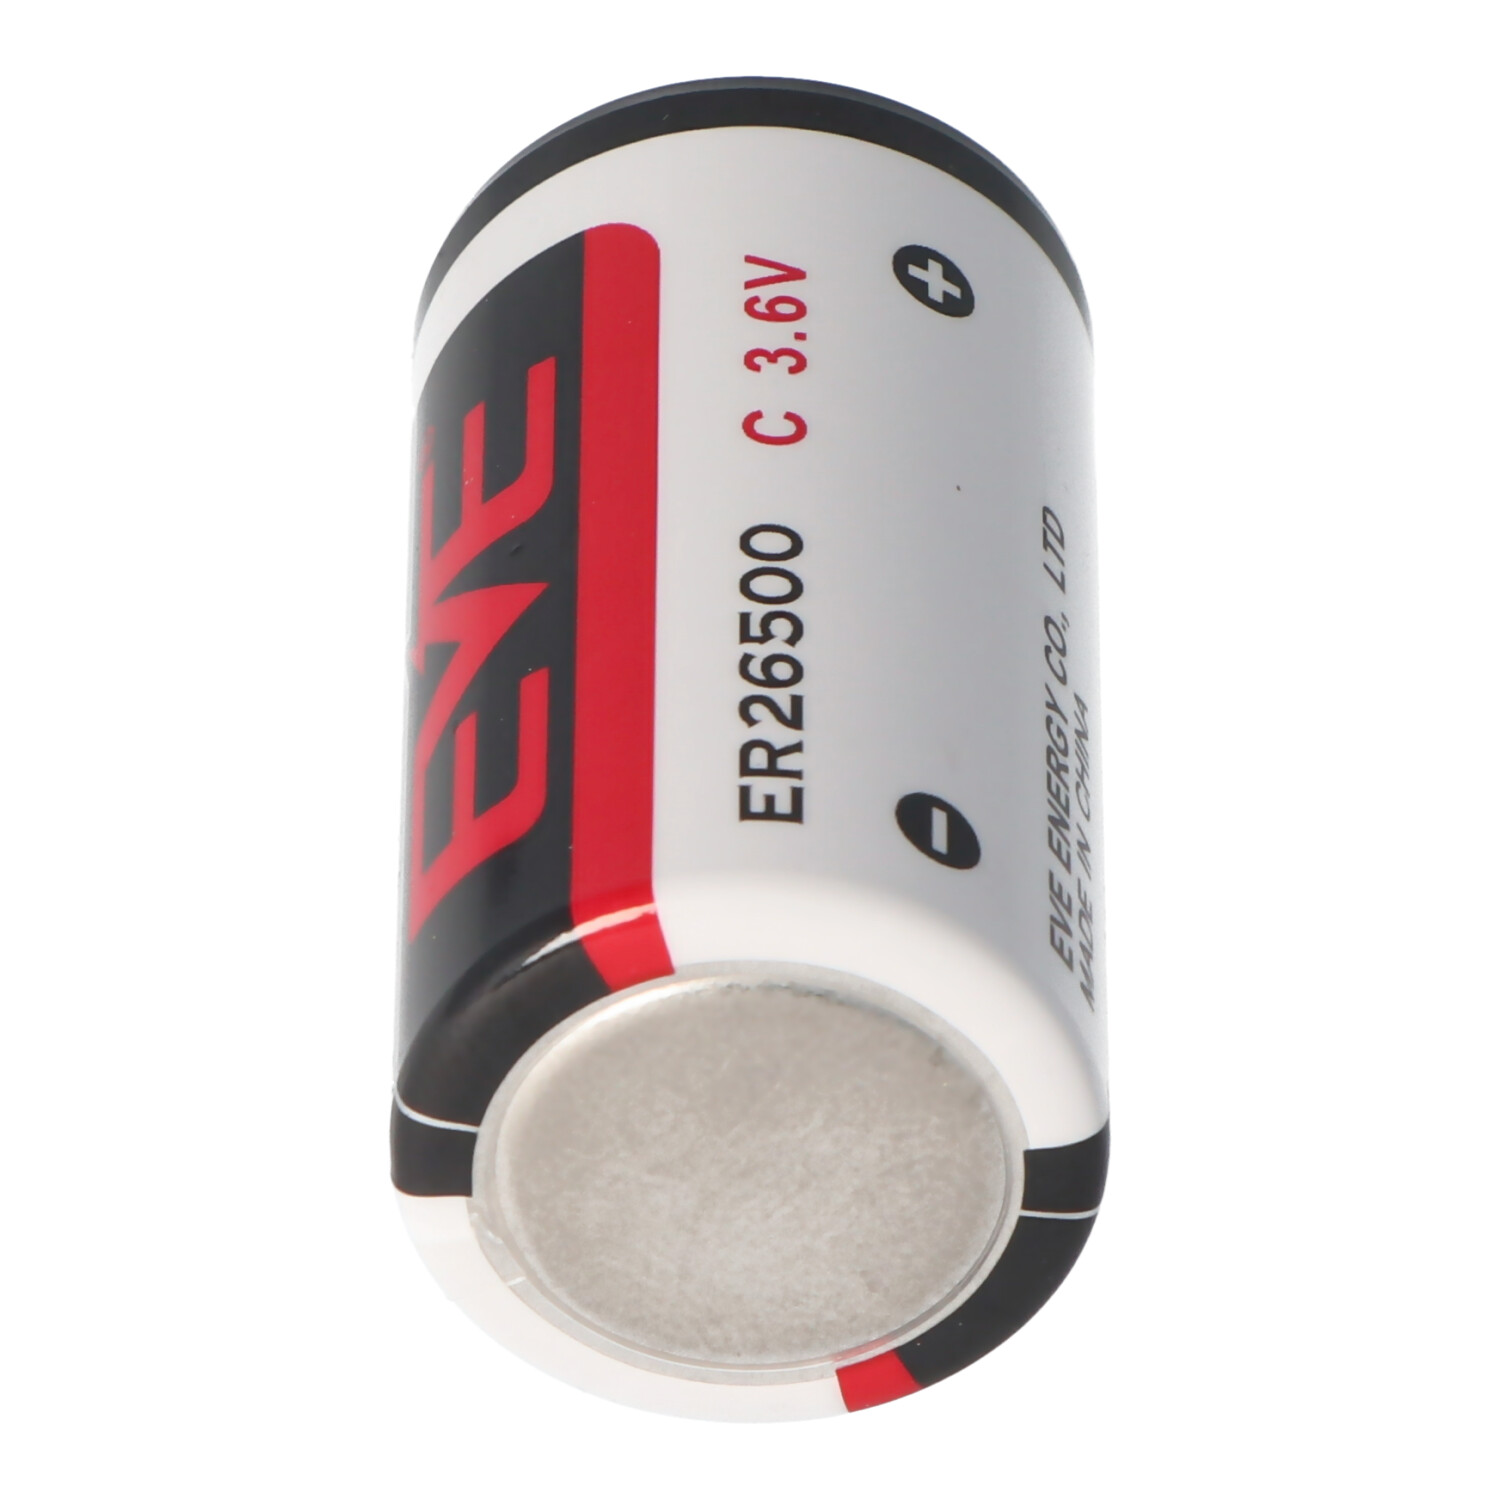 Bobine ER26500 de taille C pour batterie au lithium ER 26500, 3,6 volts,  8500mAh, Autres, Piles au lithium, Piles